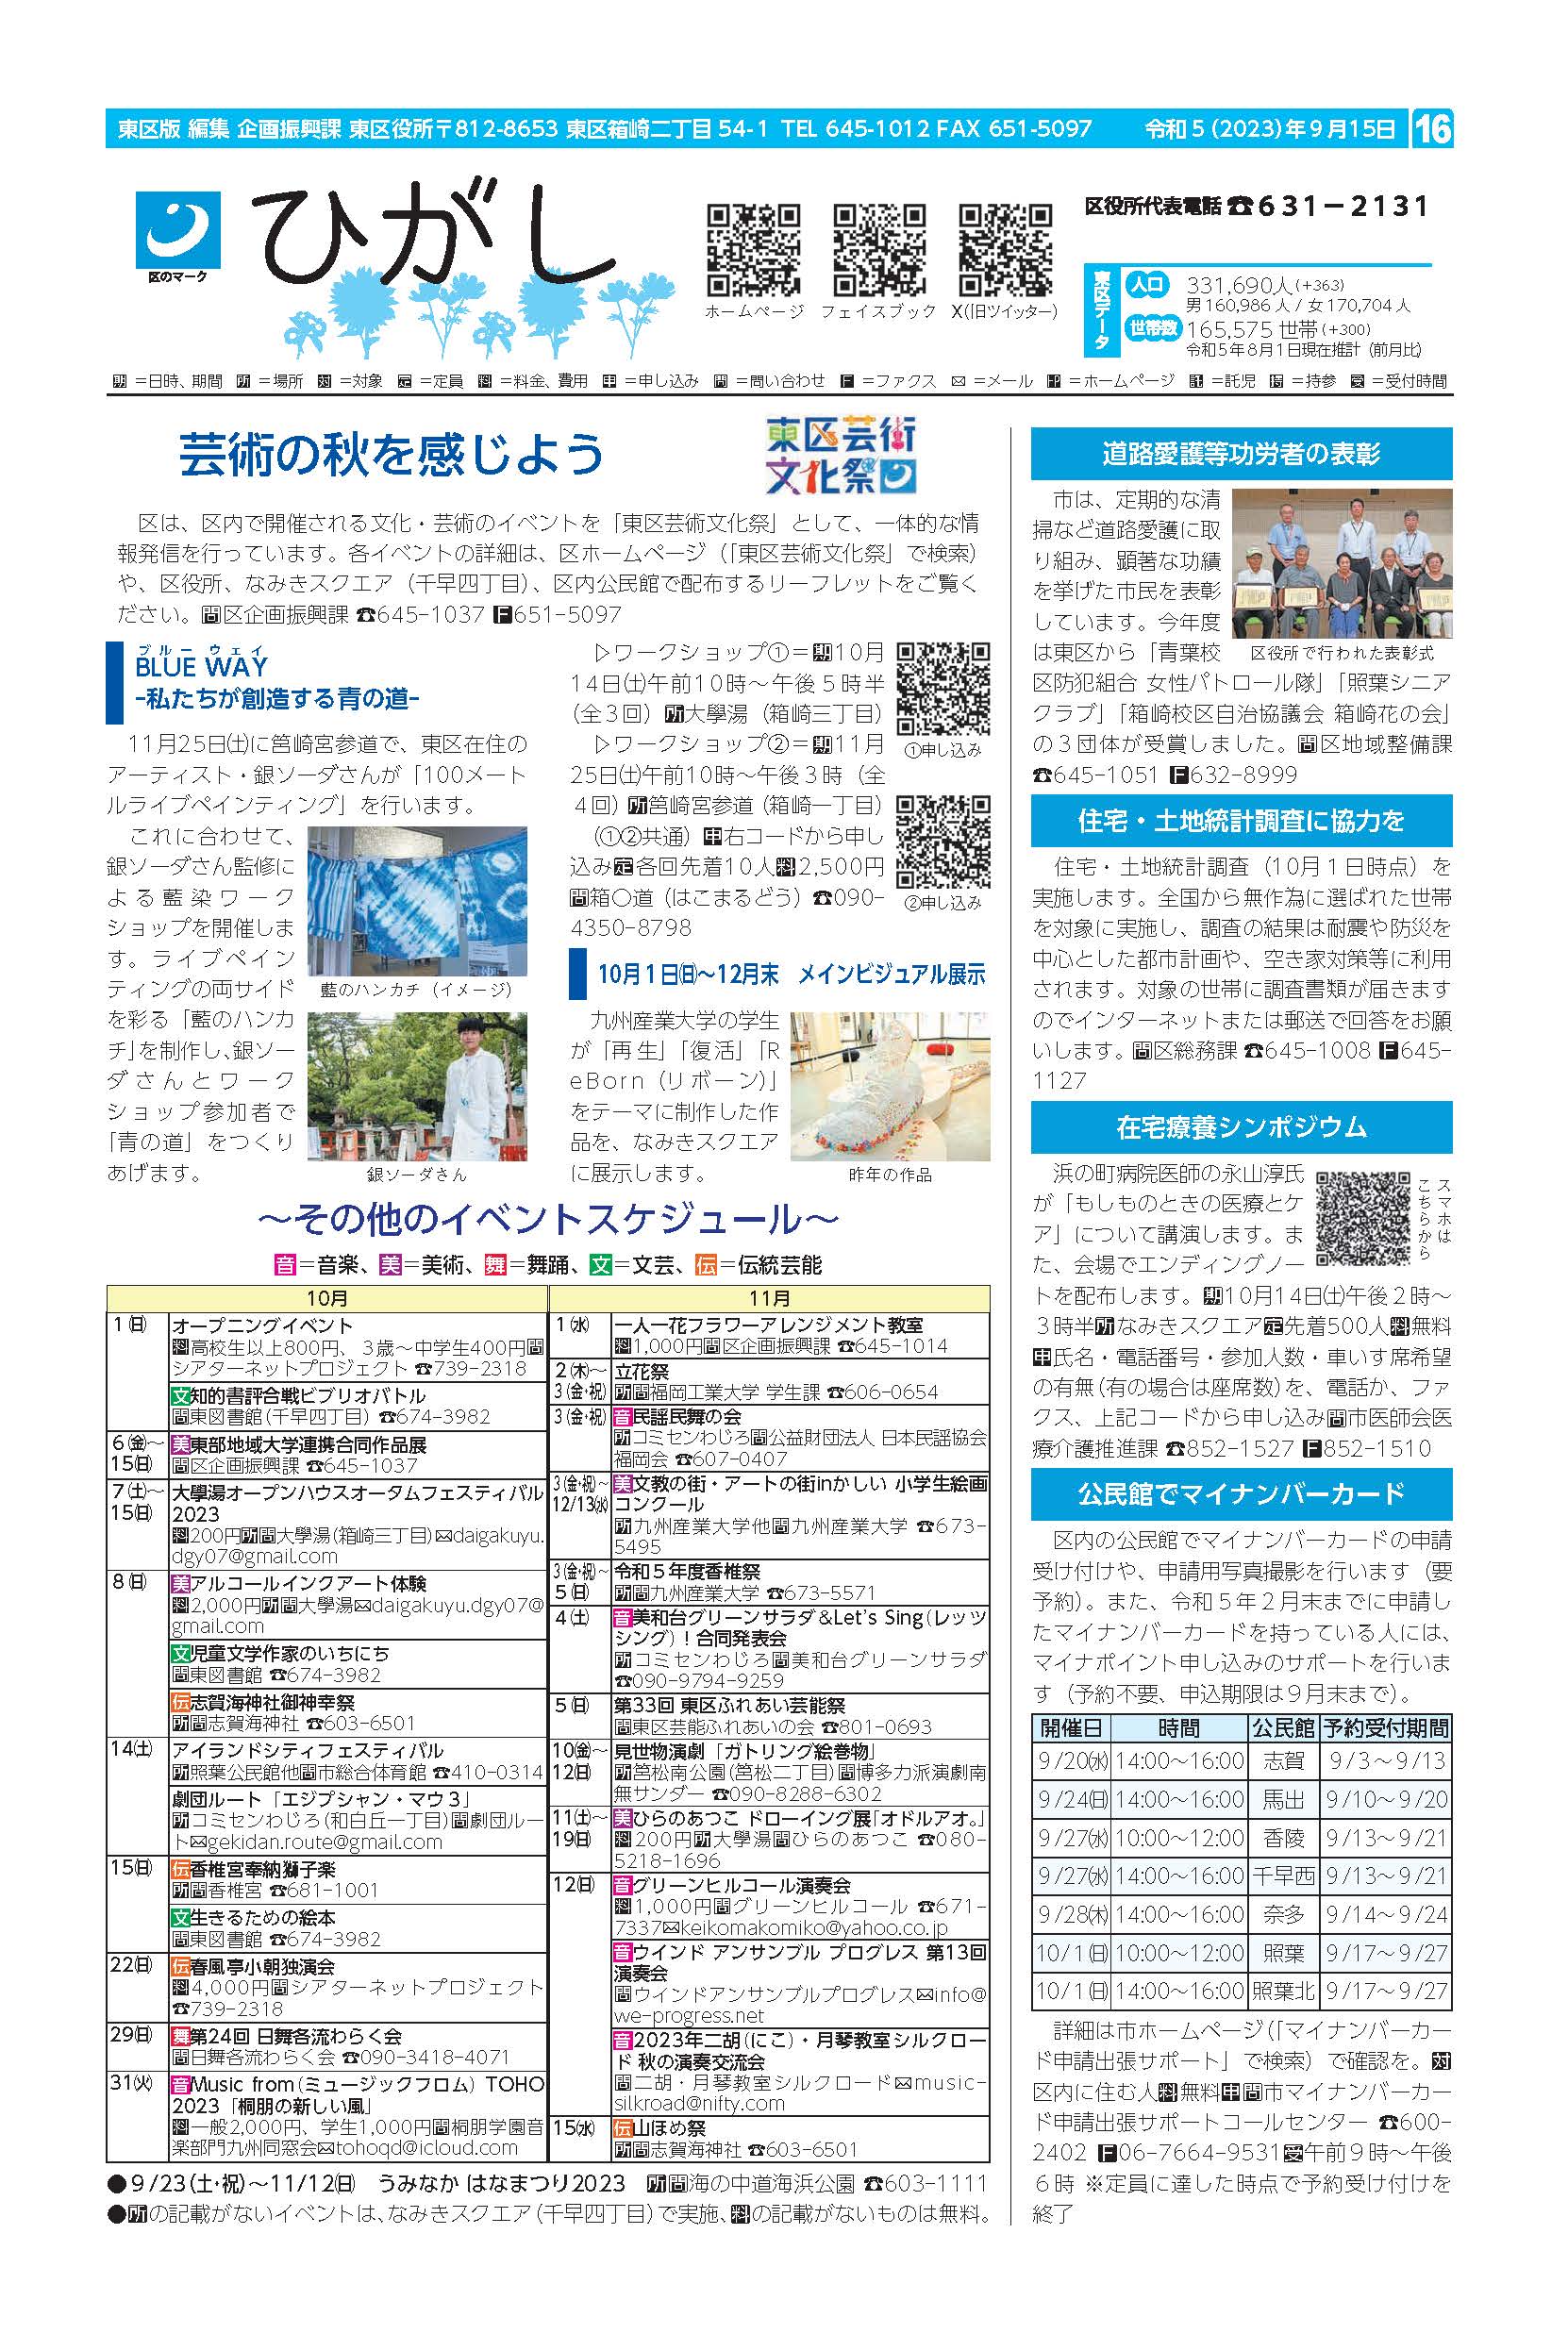 福岡市政だより2023年9月15日号の東区版の紙面画像